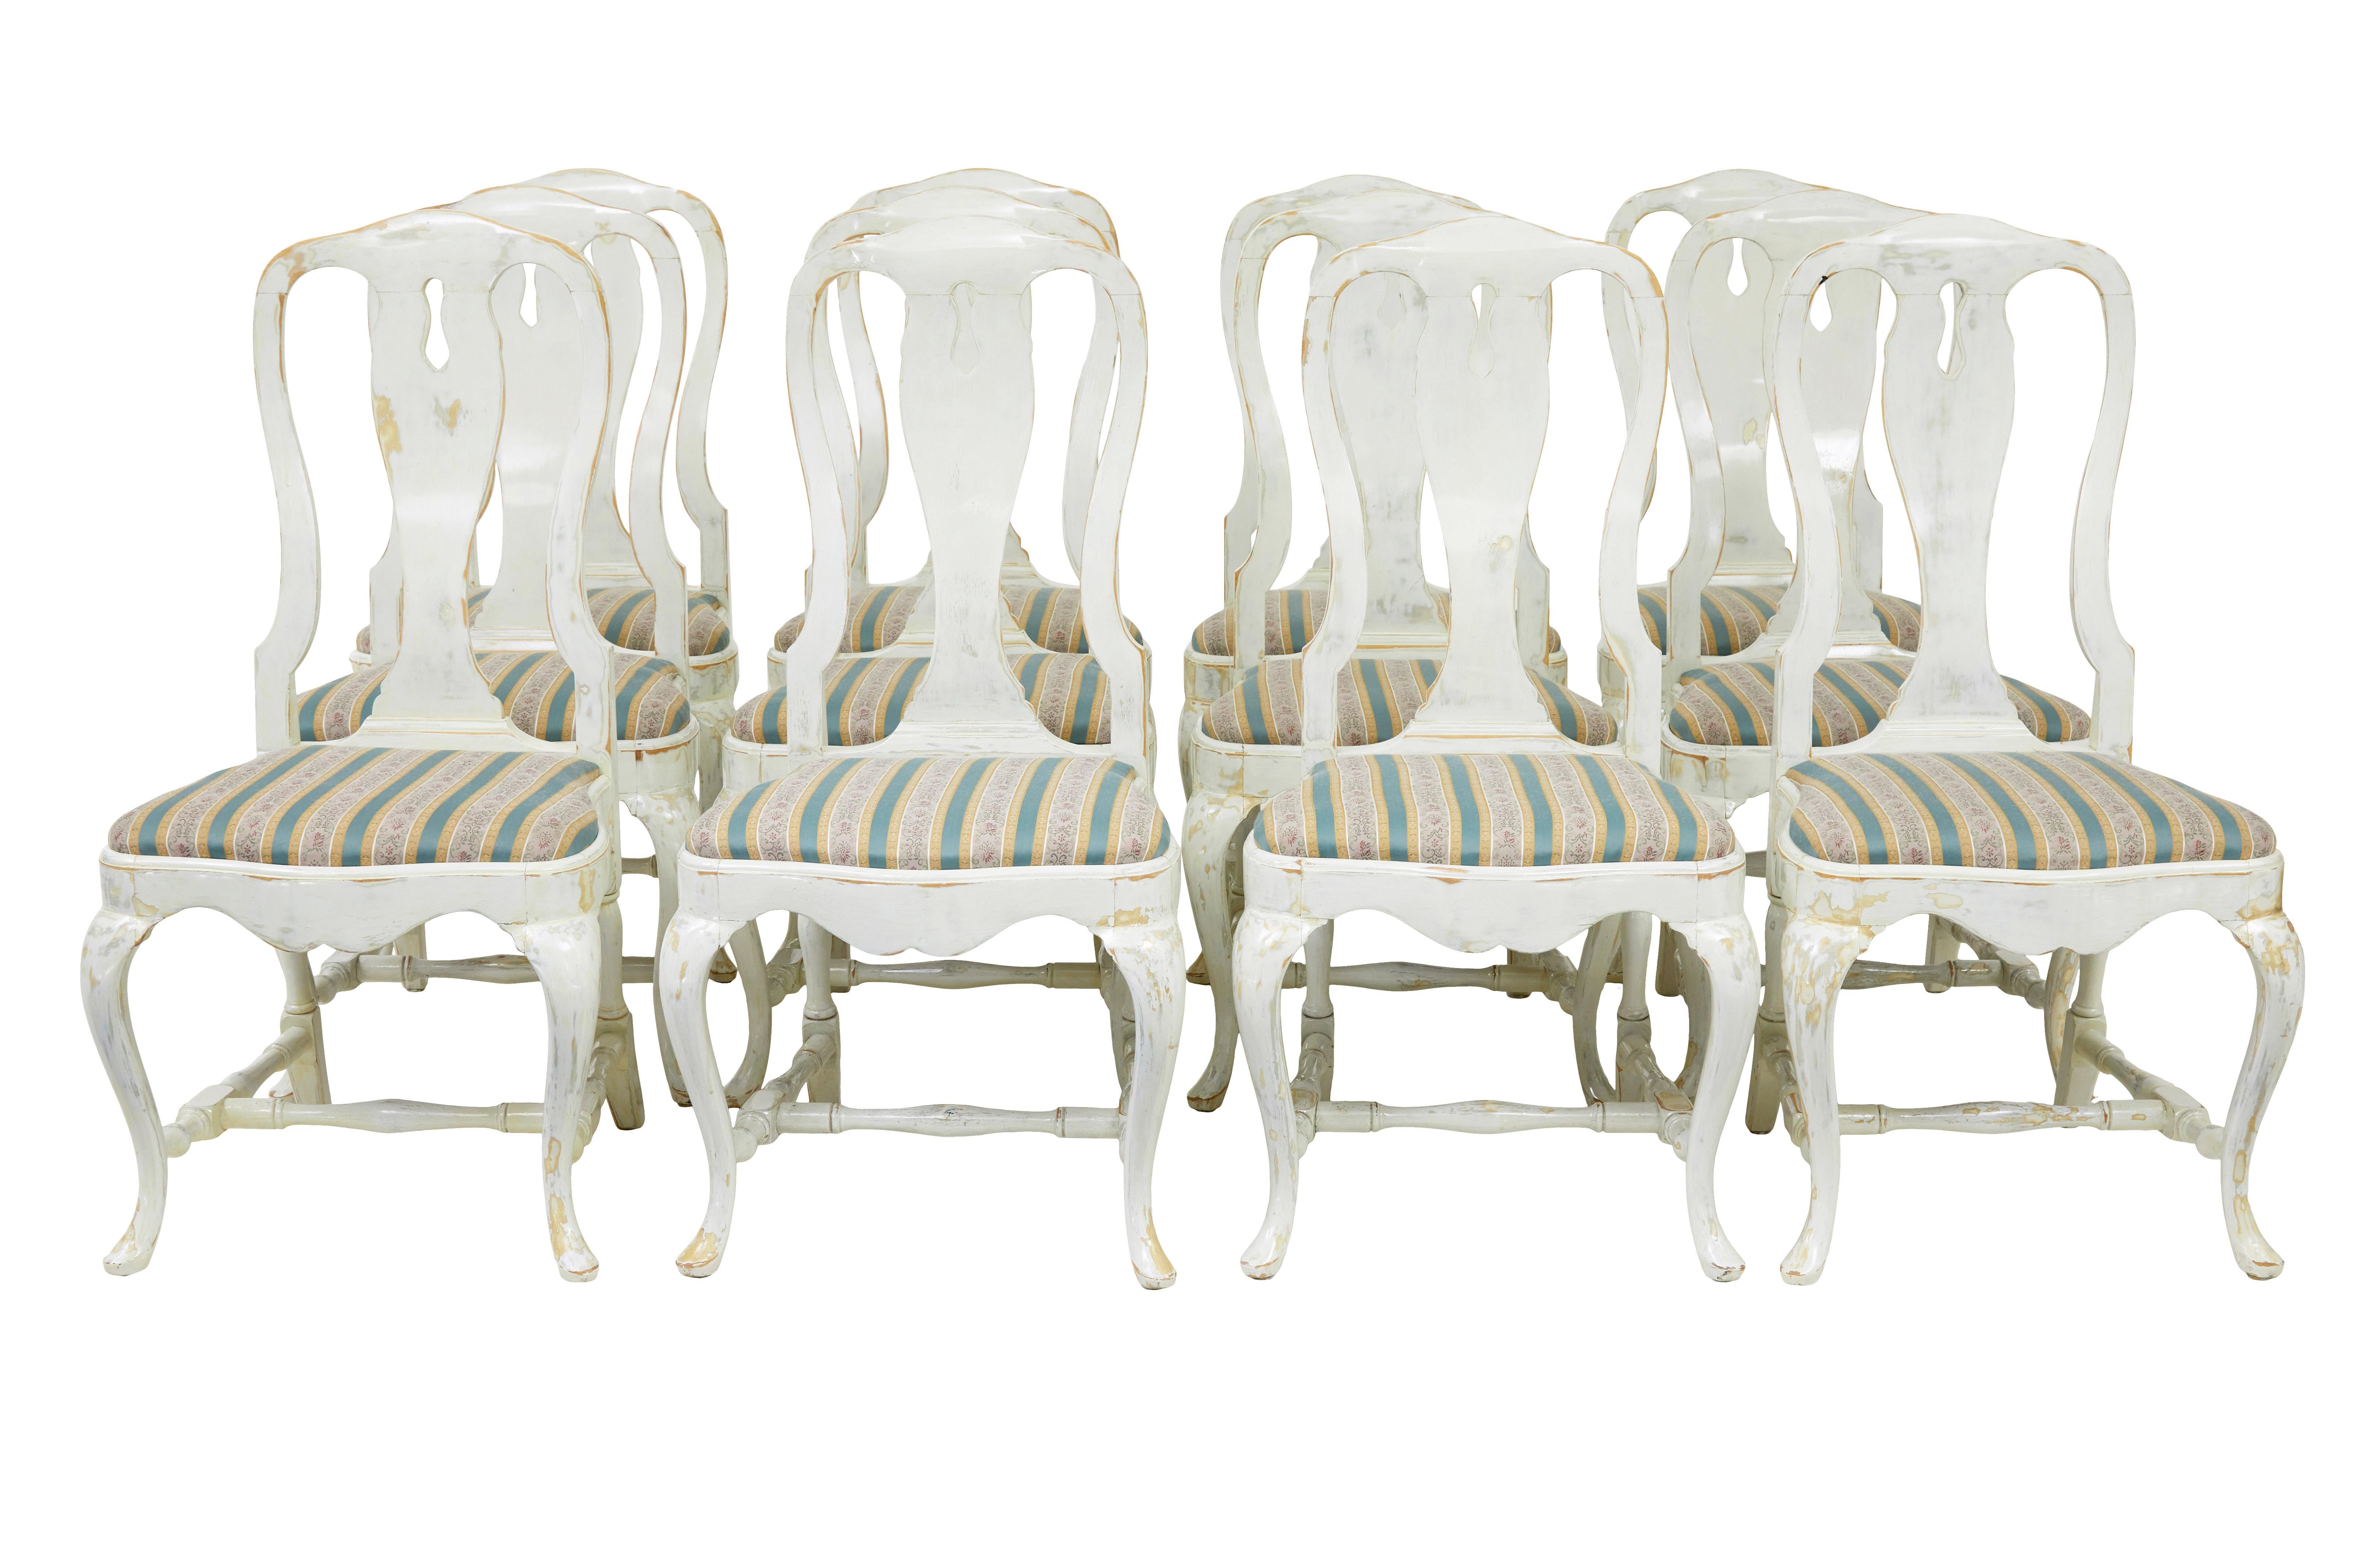 Ensemble de 14 chaises de salle à manger laquées d'influence reine anne vers 1920.

L'ensemble comprend 12 chaises simples et 2 fauteuils carver.  Fabriqué en hêtre puis peint en blanc, cette peinture a été frottée par endroits pour créer un effet